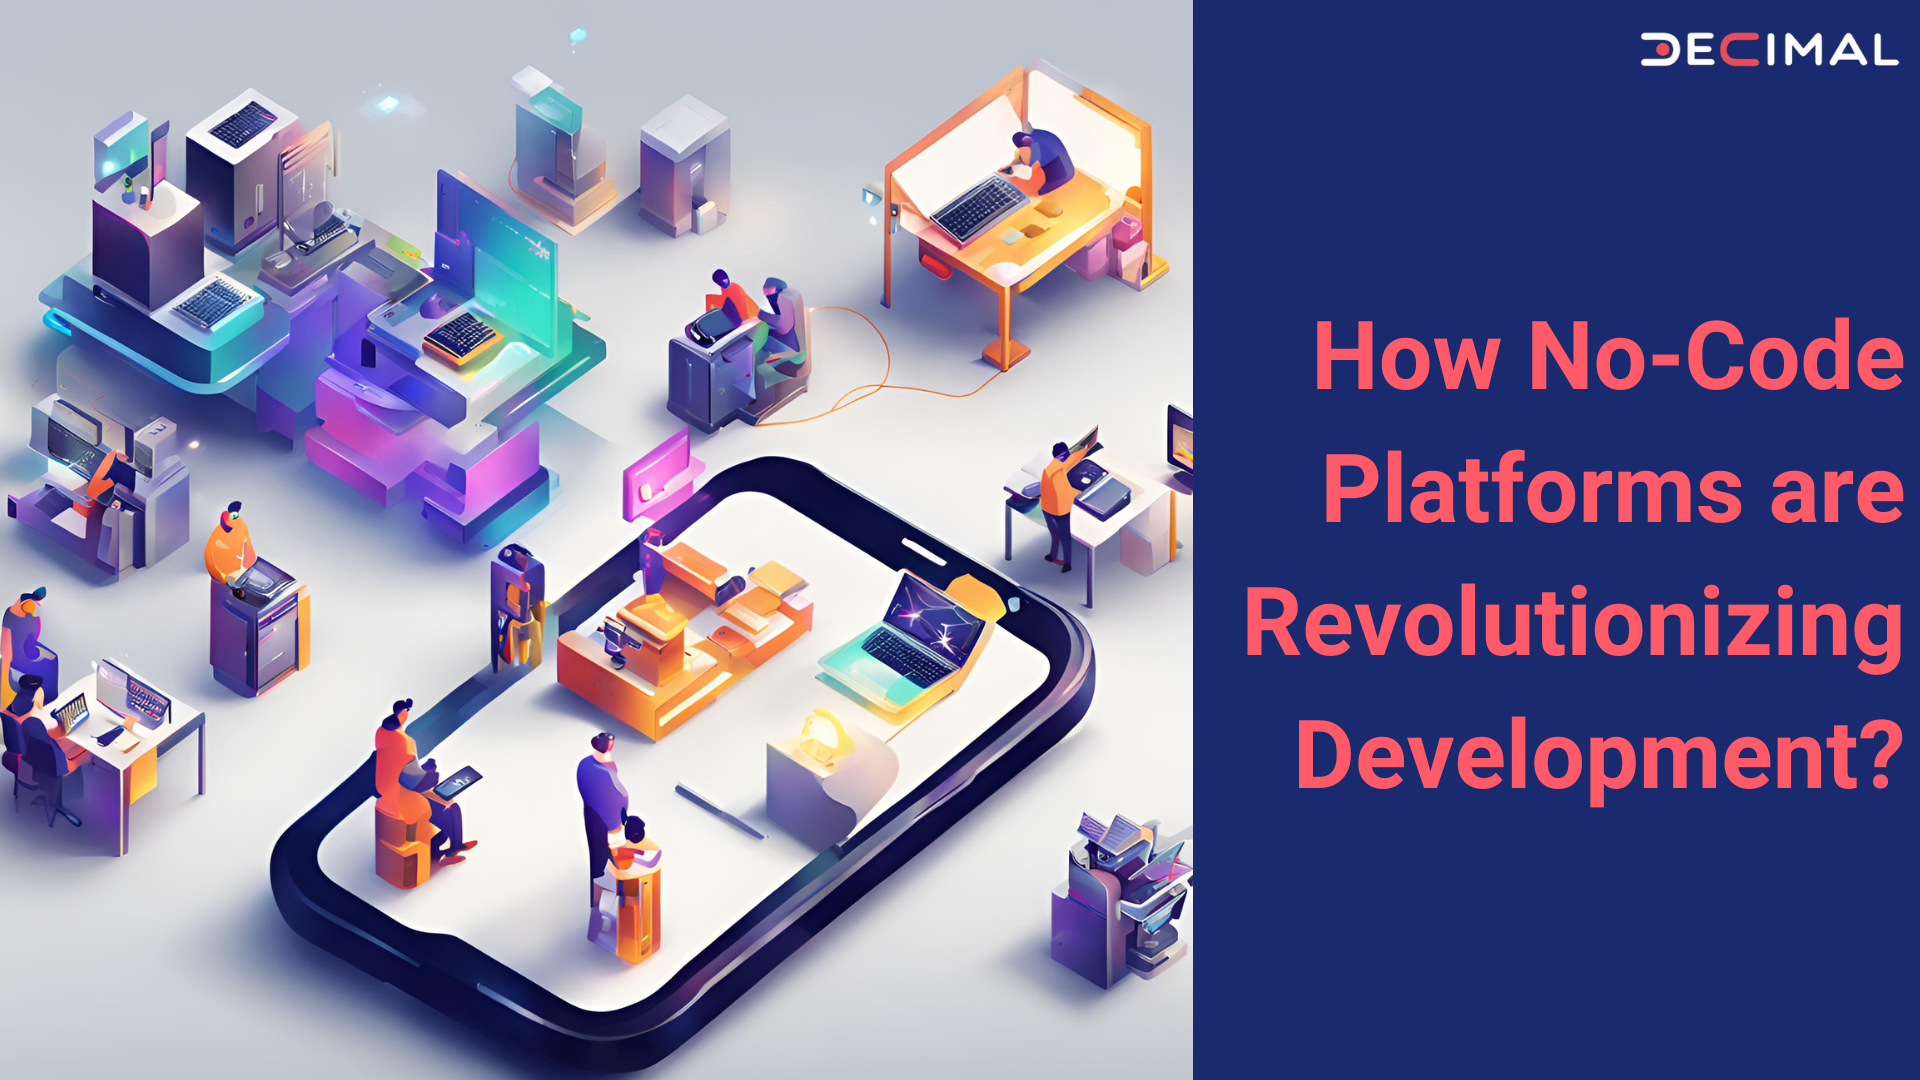 How No-Code Platforms are Revolutionizing Development